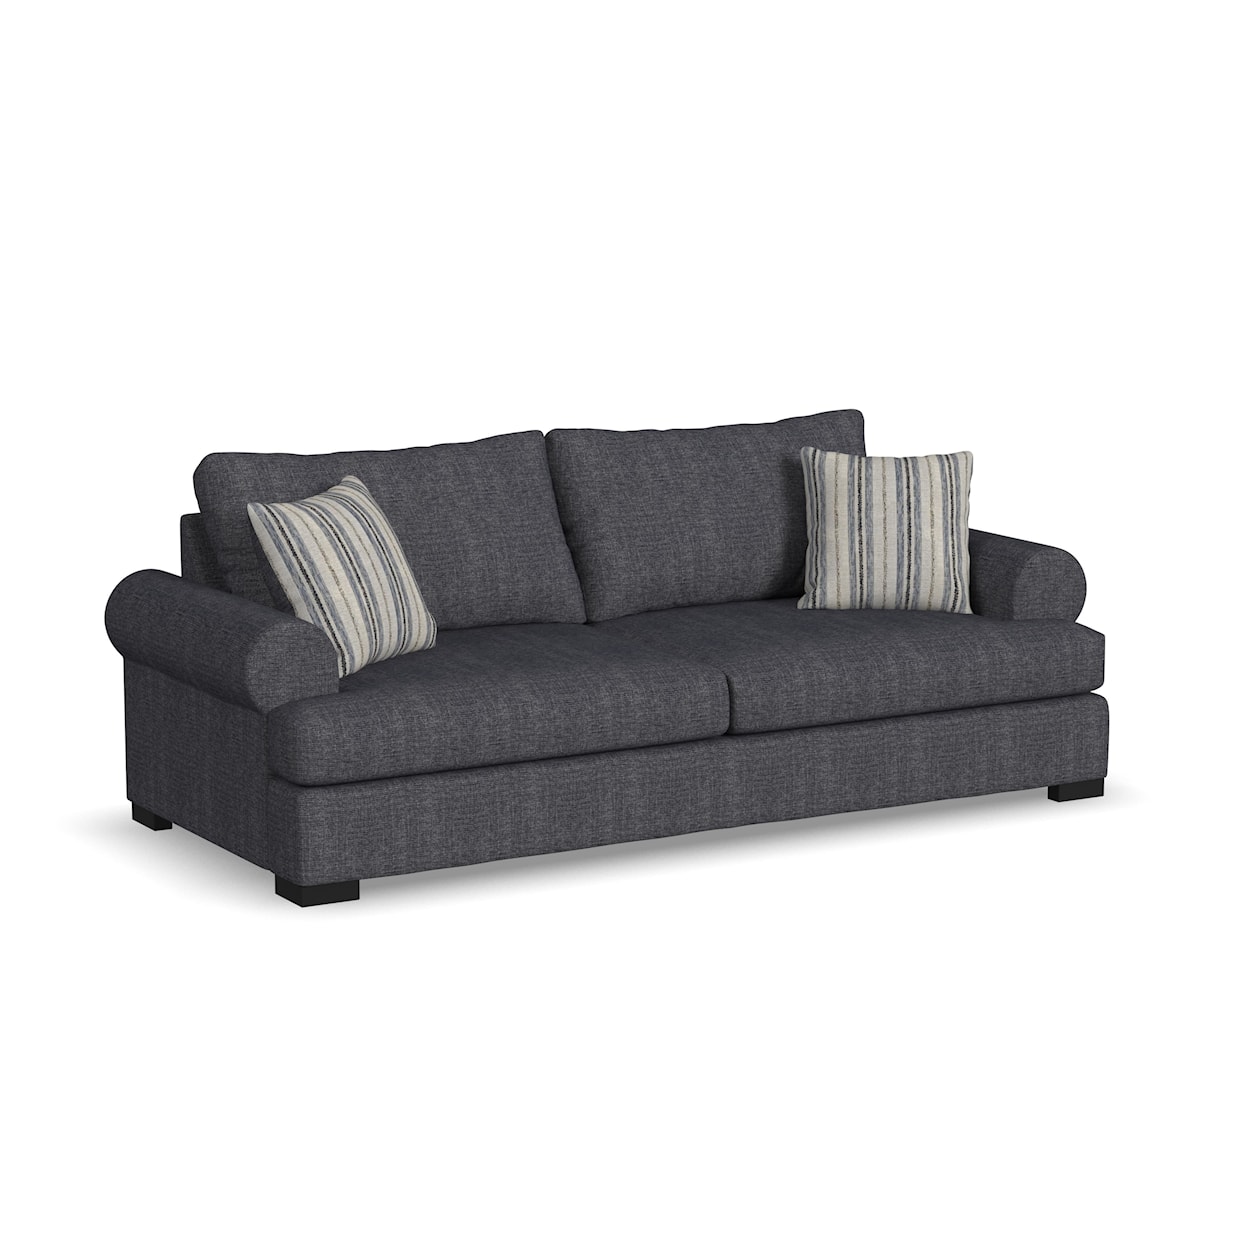 Flexsteel Charisma - Florence Extra Large Two-Cushion Sofa